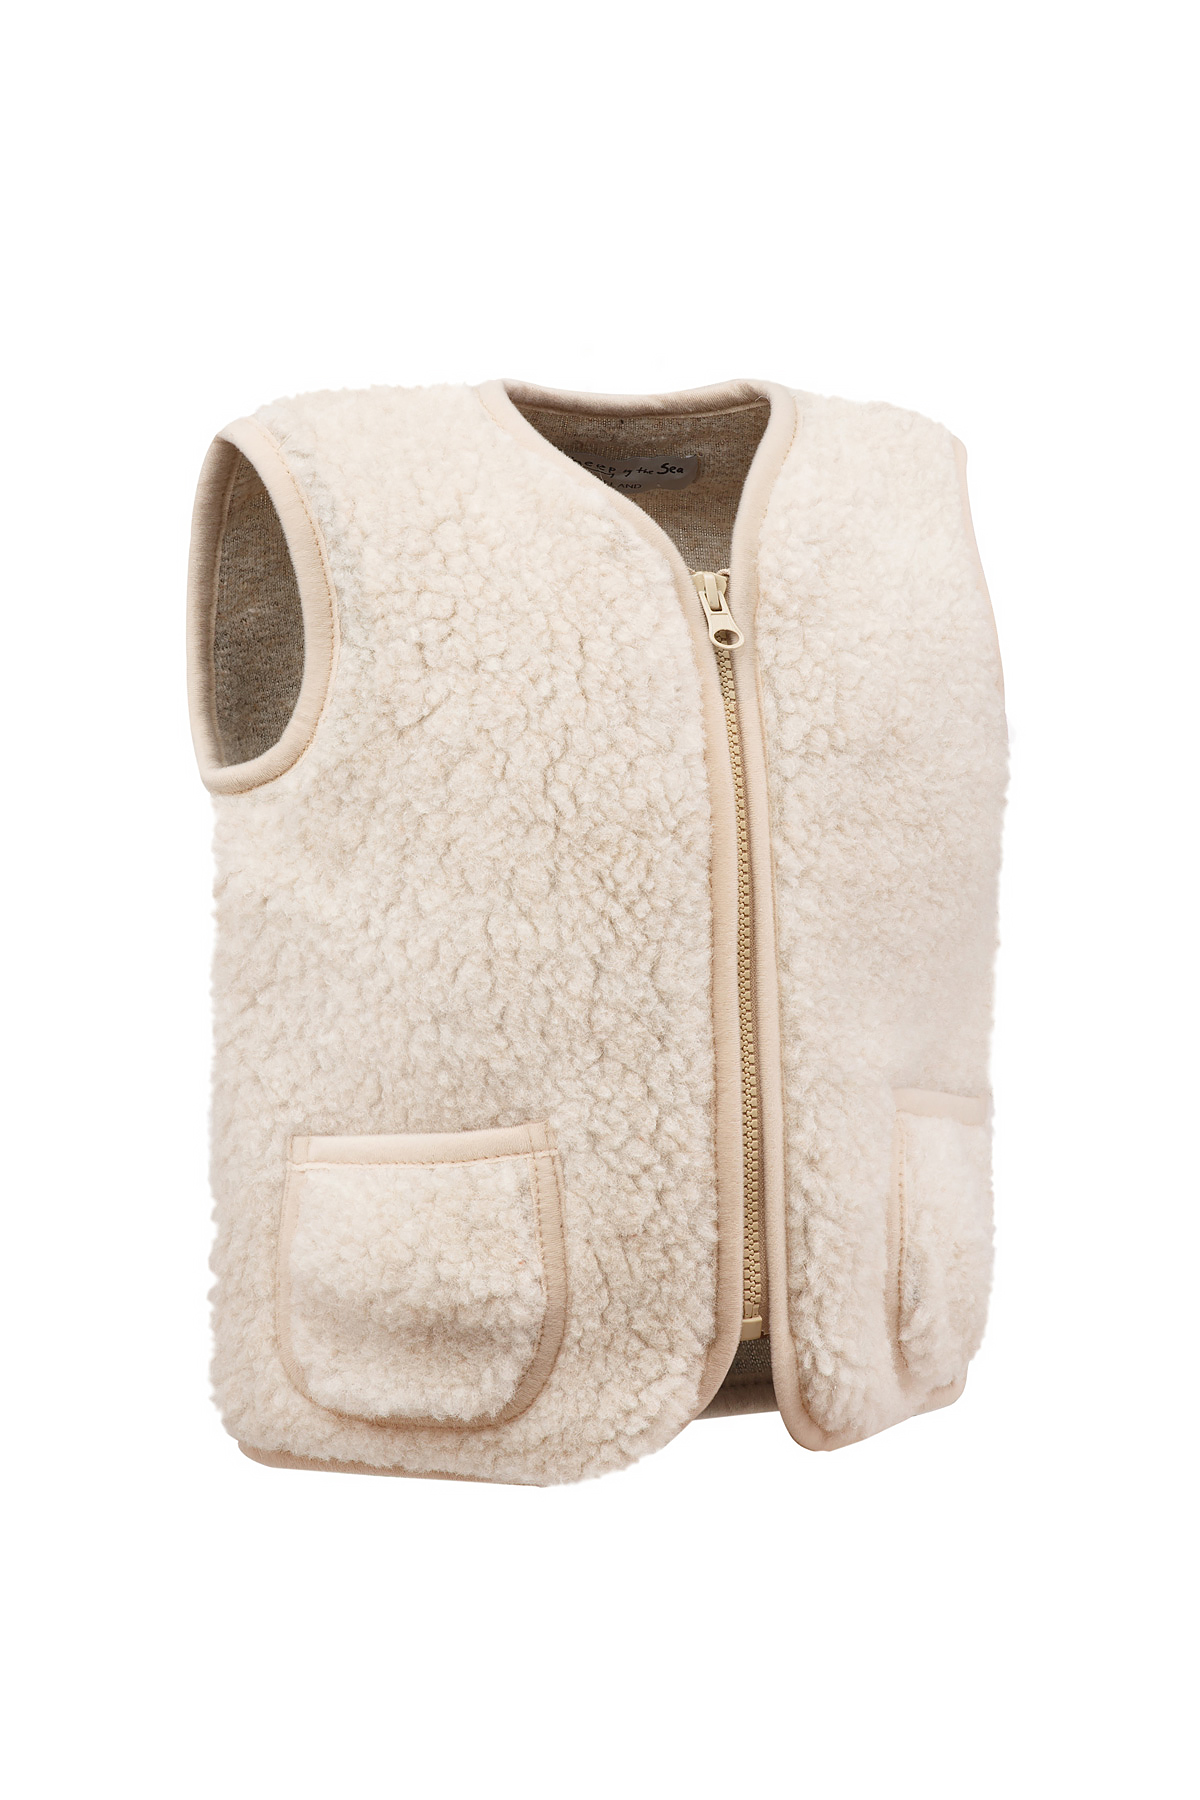 Image of a beige vest pepitko for kids